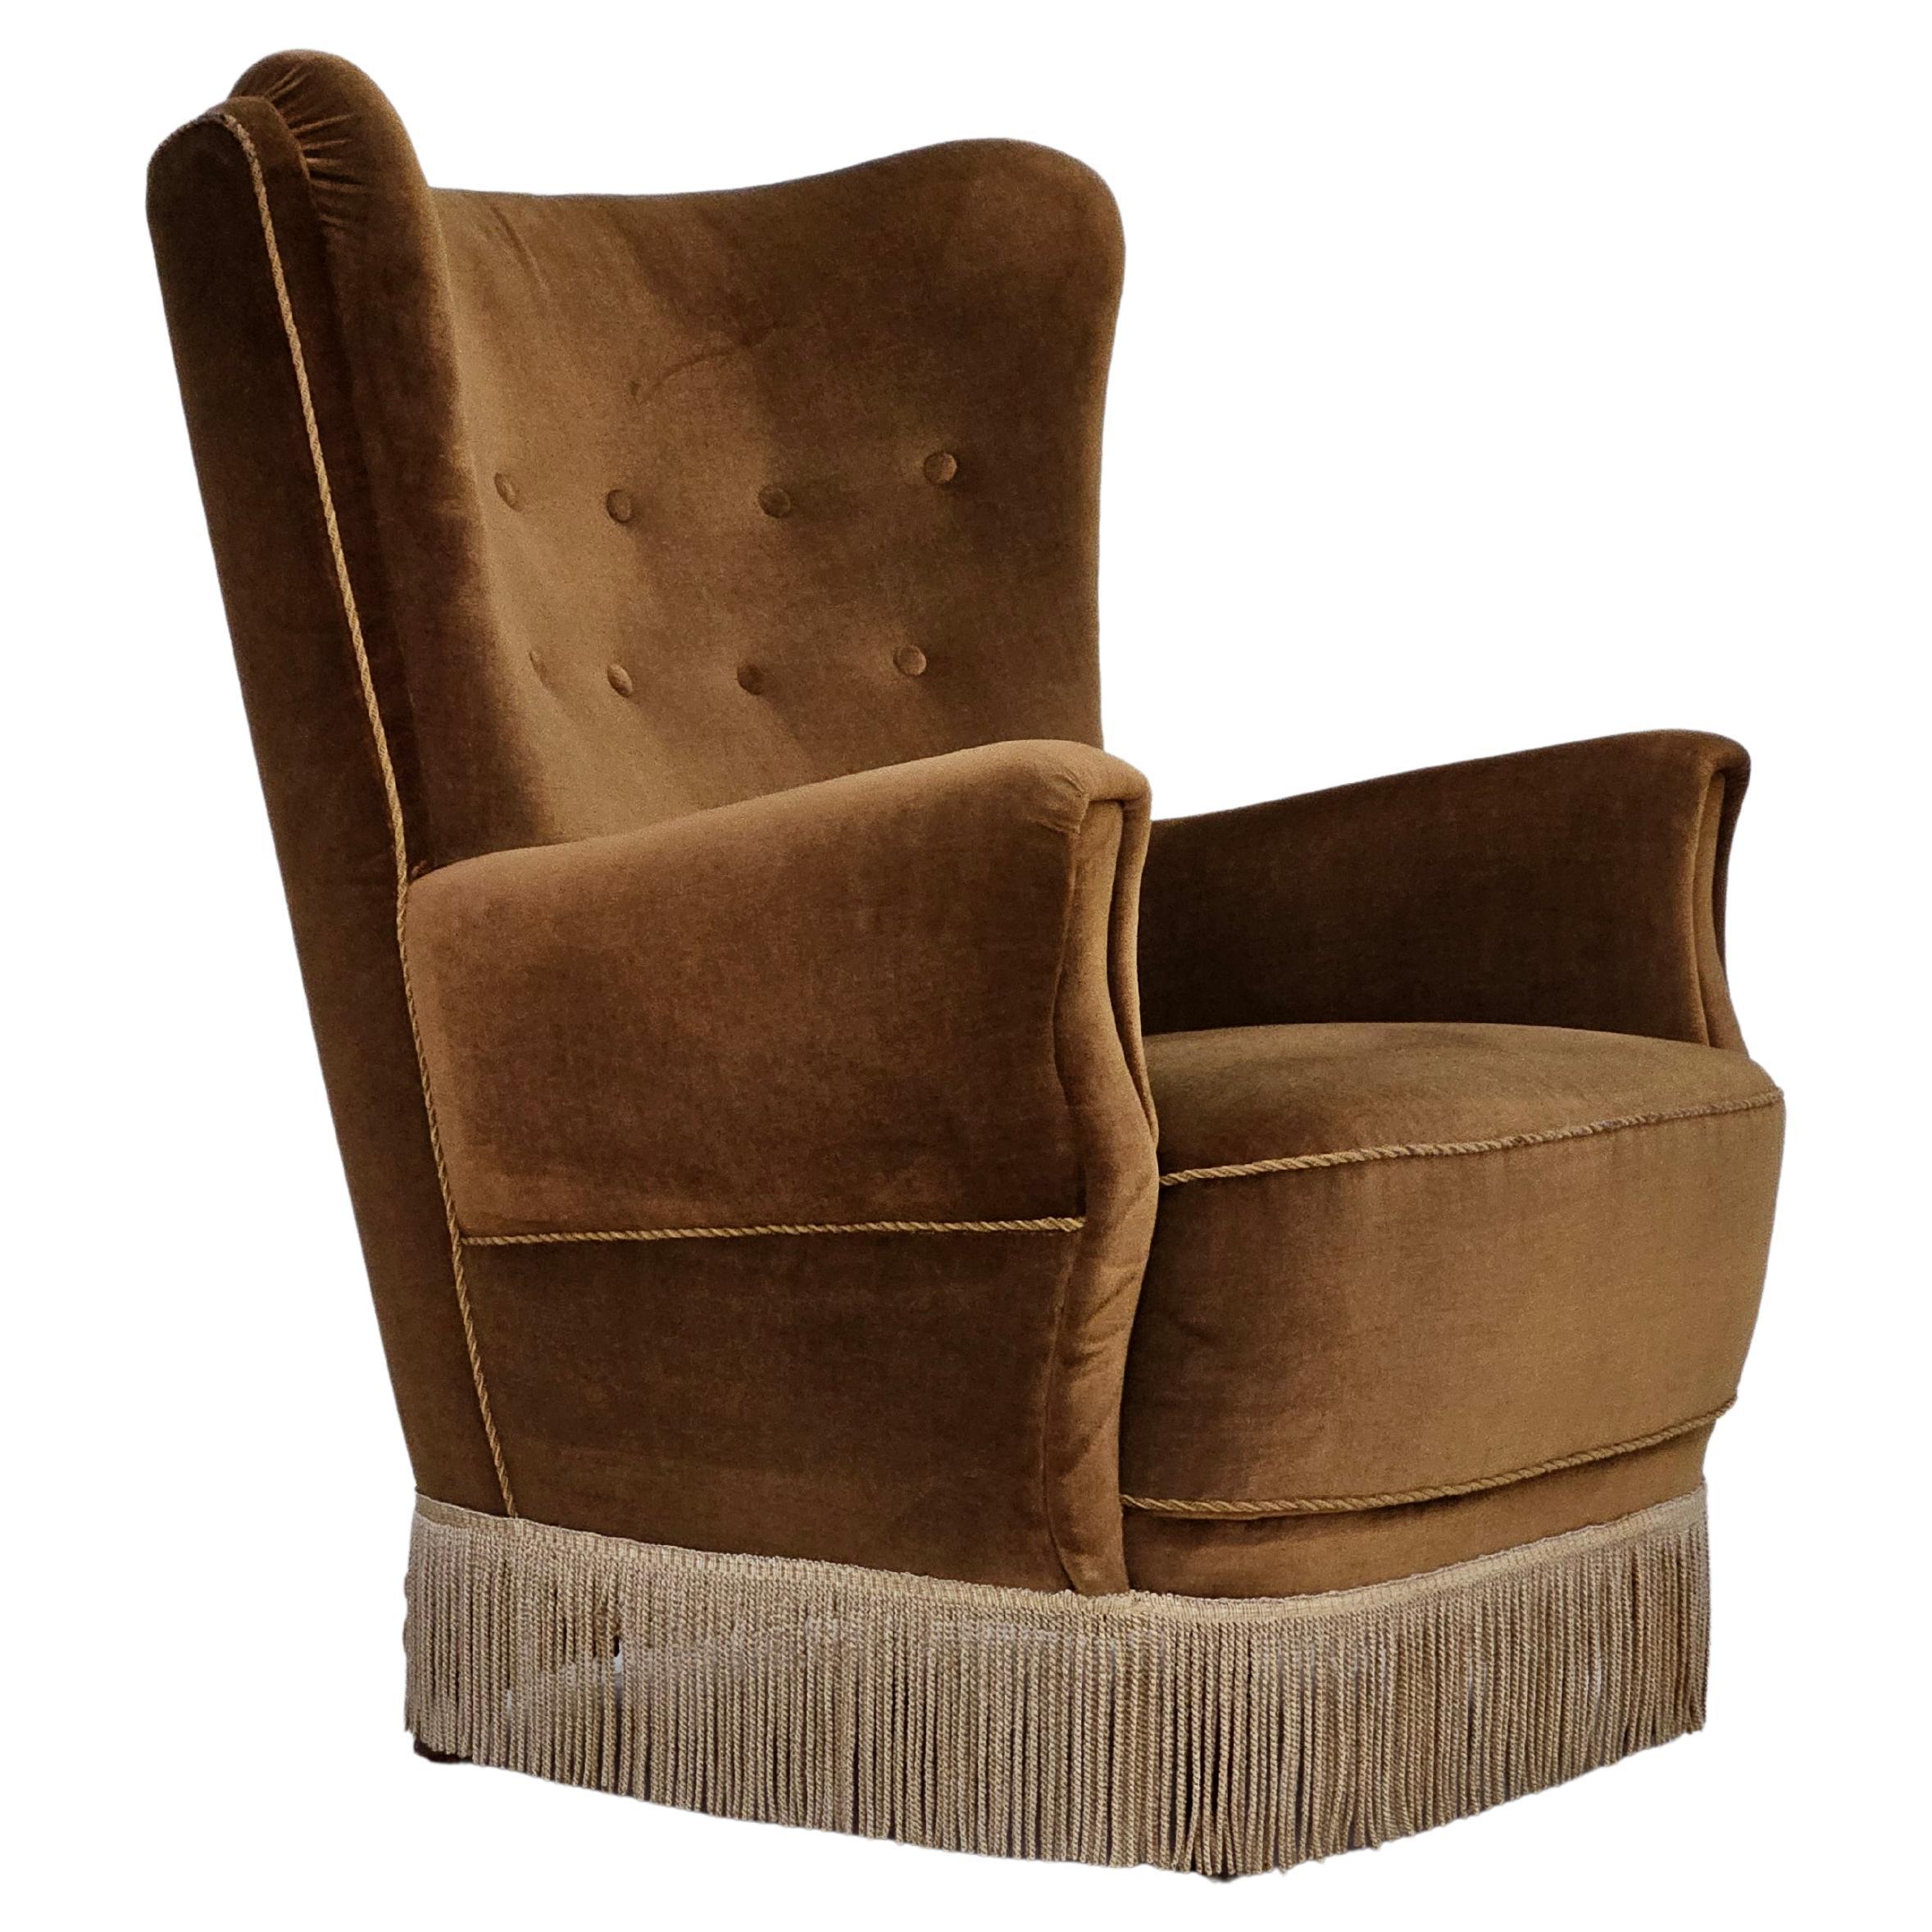 Années 1960, chaise de relax danoise à haut dossier, rembourrage d'origine, velours vert.